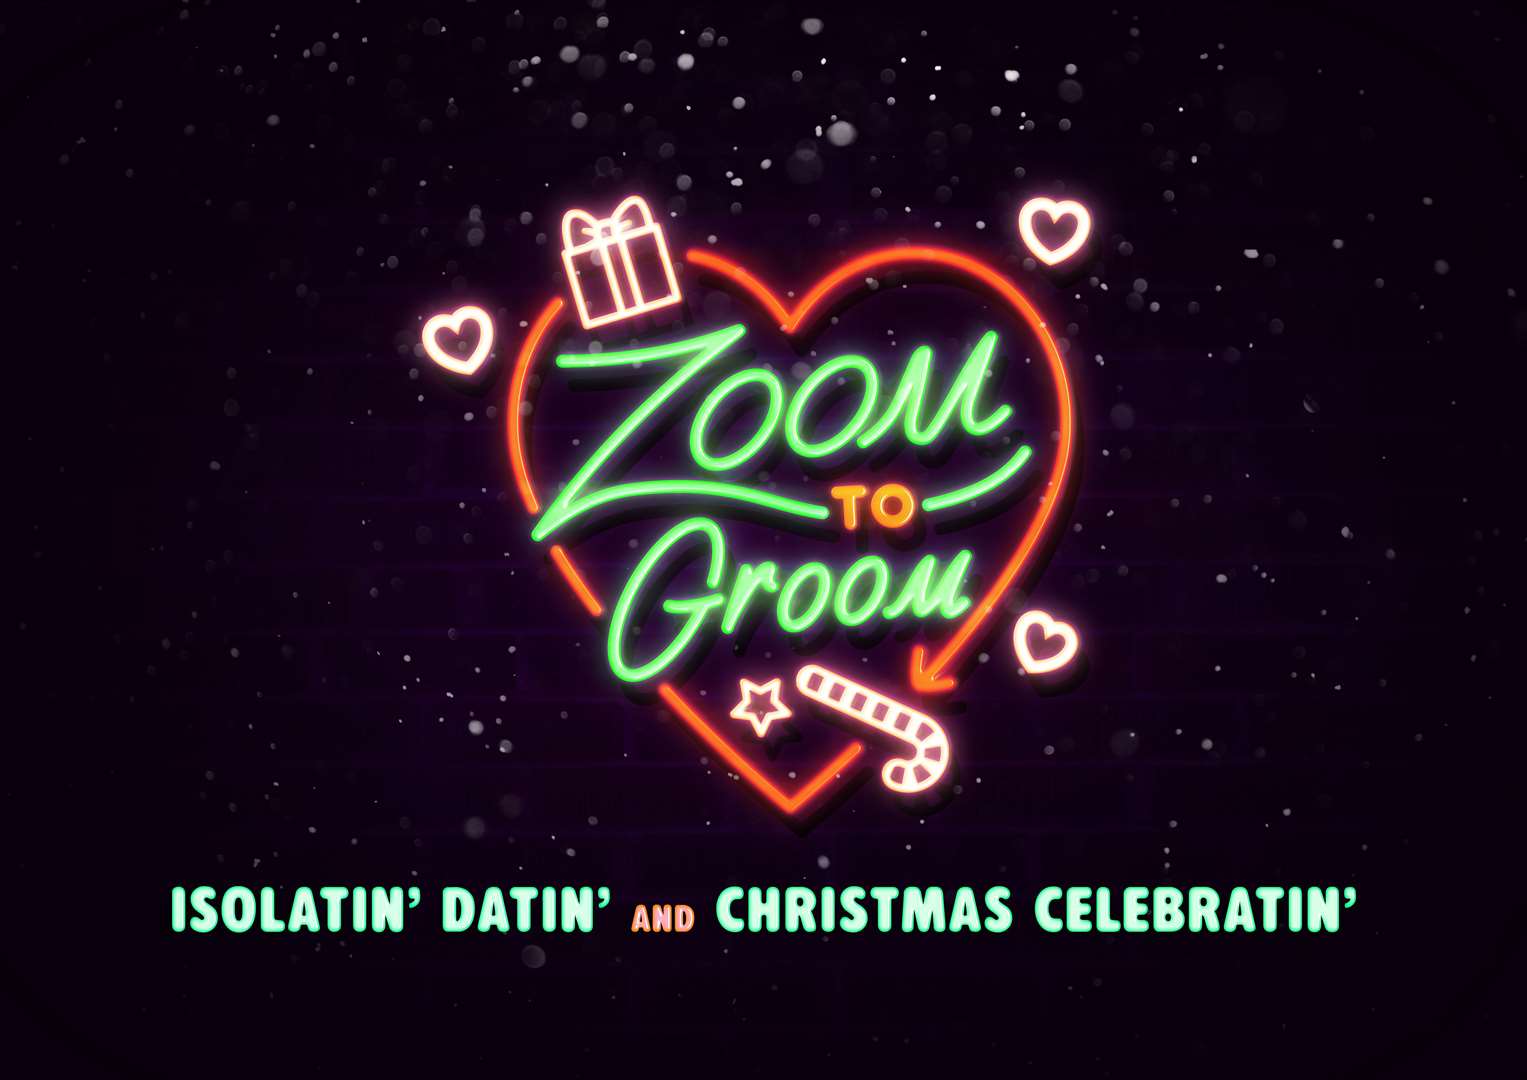 Zoom To Groom Christmas Edition.